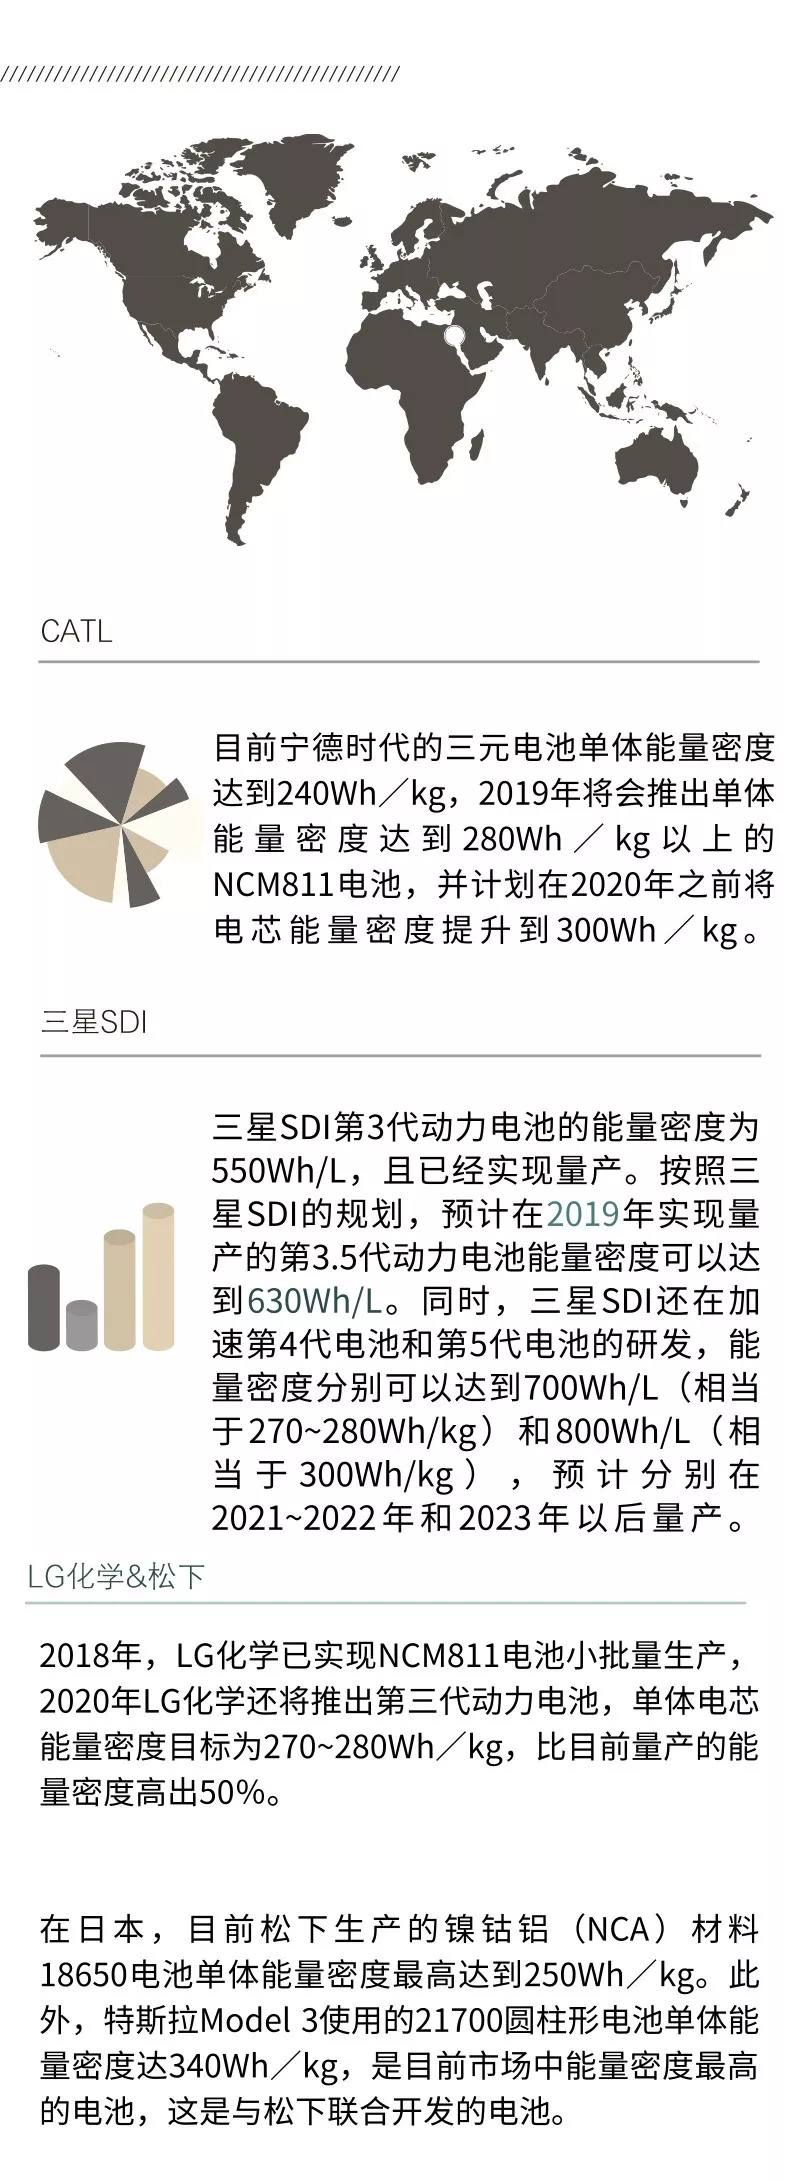 300W/Kg锂电池，CATL、LG、三星SDI和松下等企业多角度对比